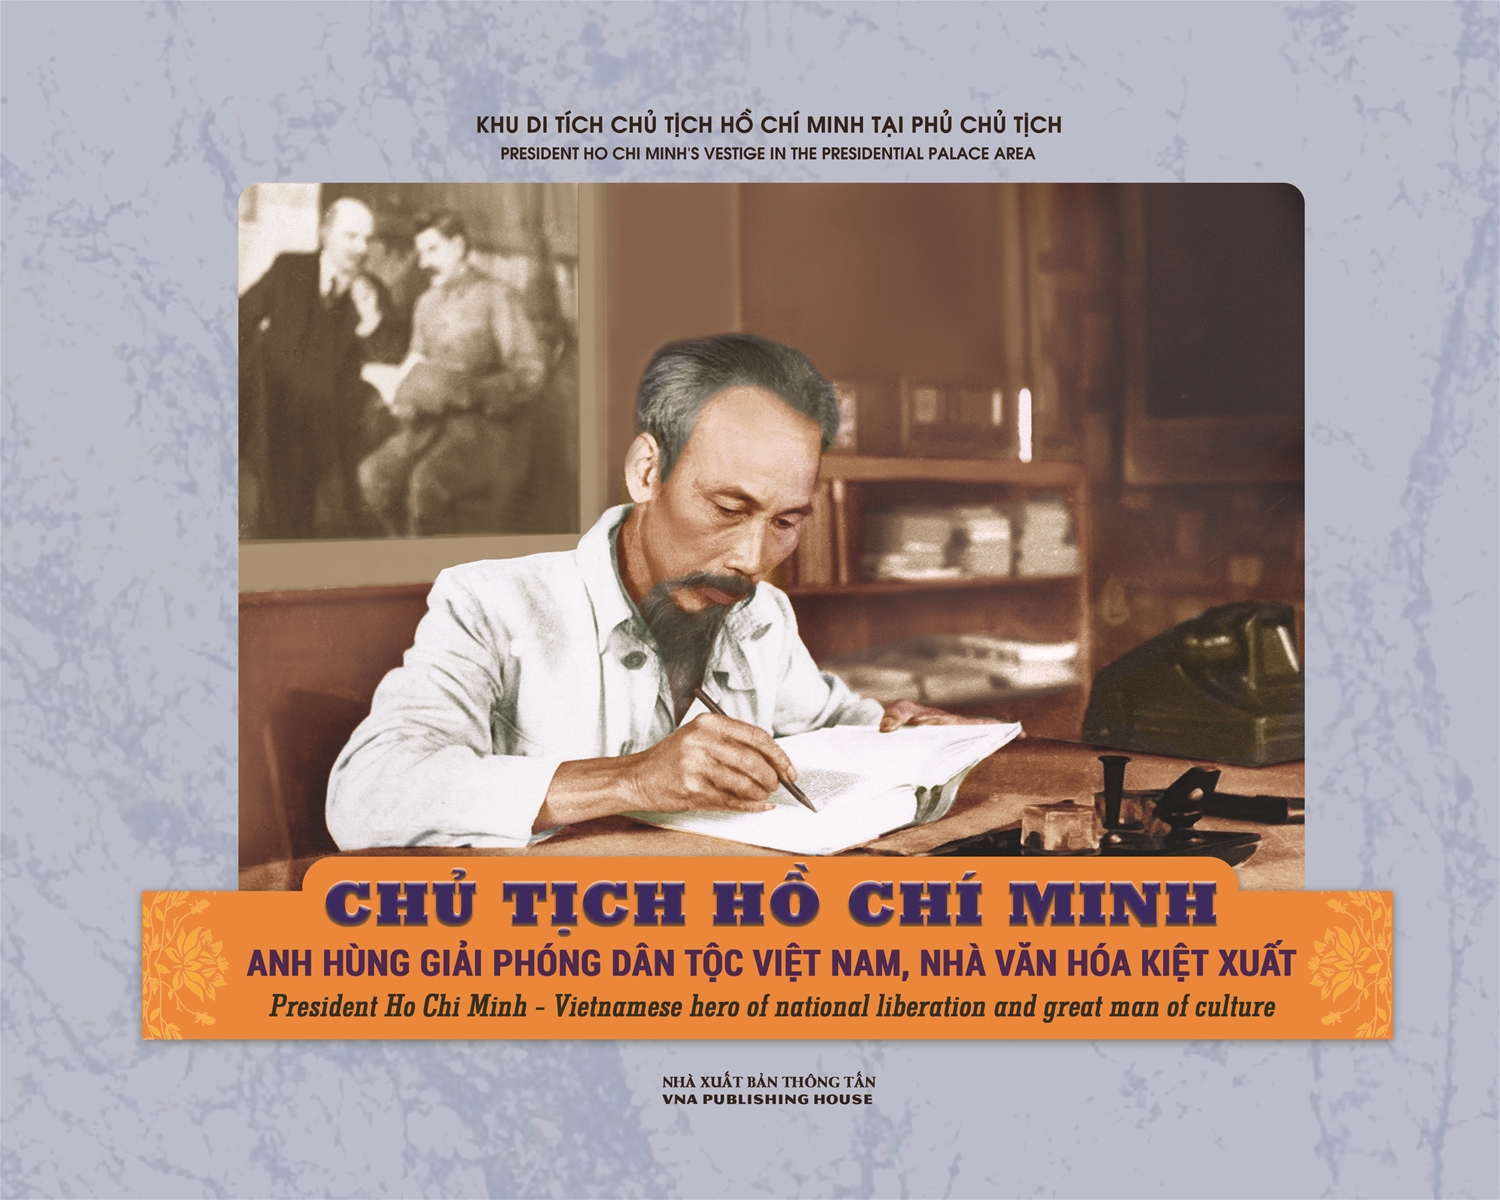 Giới thiệu cuốn sách “Chủ tịch Hồ Chí Minh, Anh hùng giải phóng dân tộc Việt Nam, nhà văn hóa kiệt xuất”